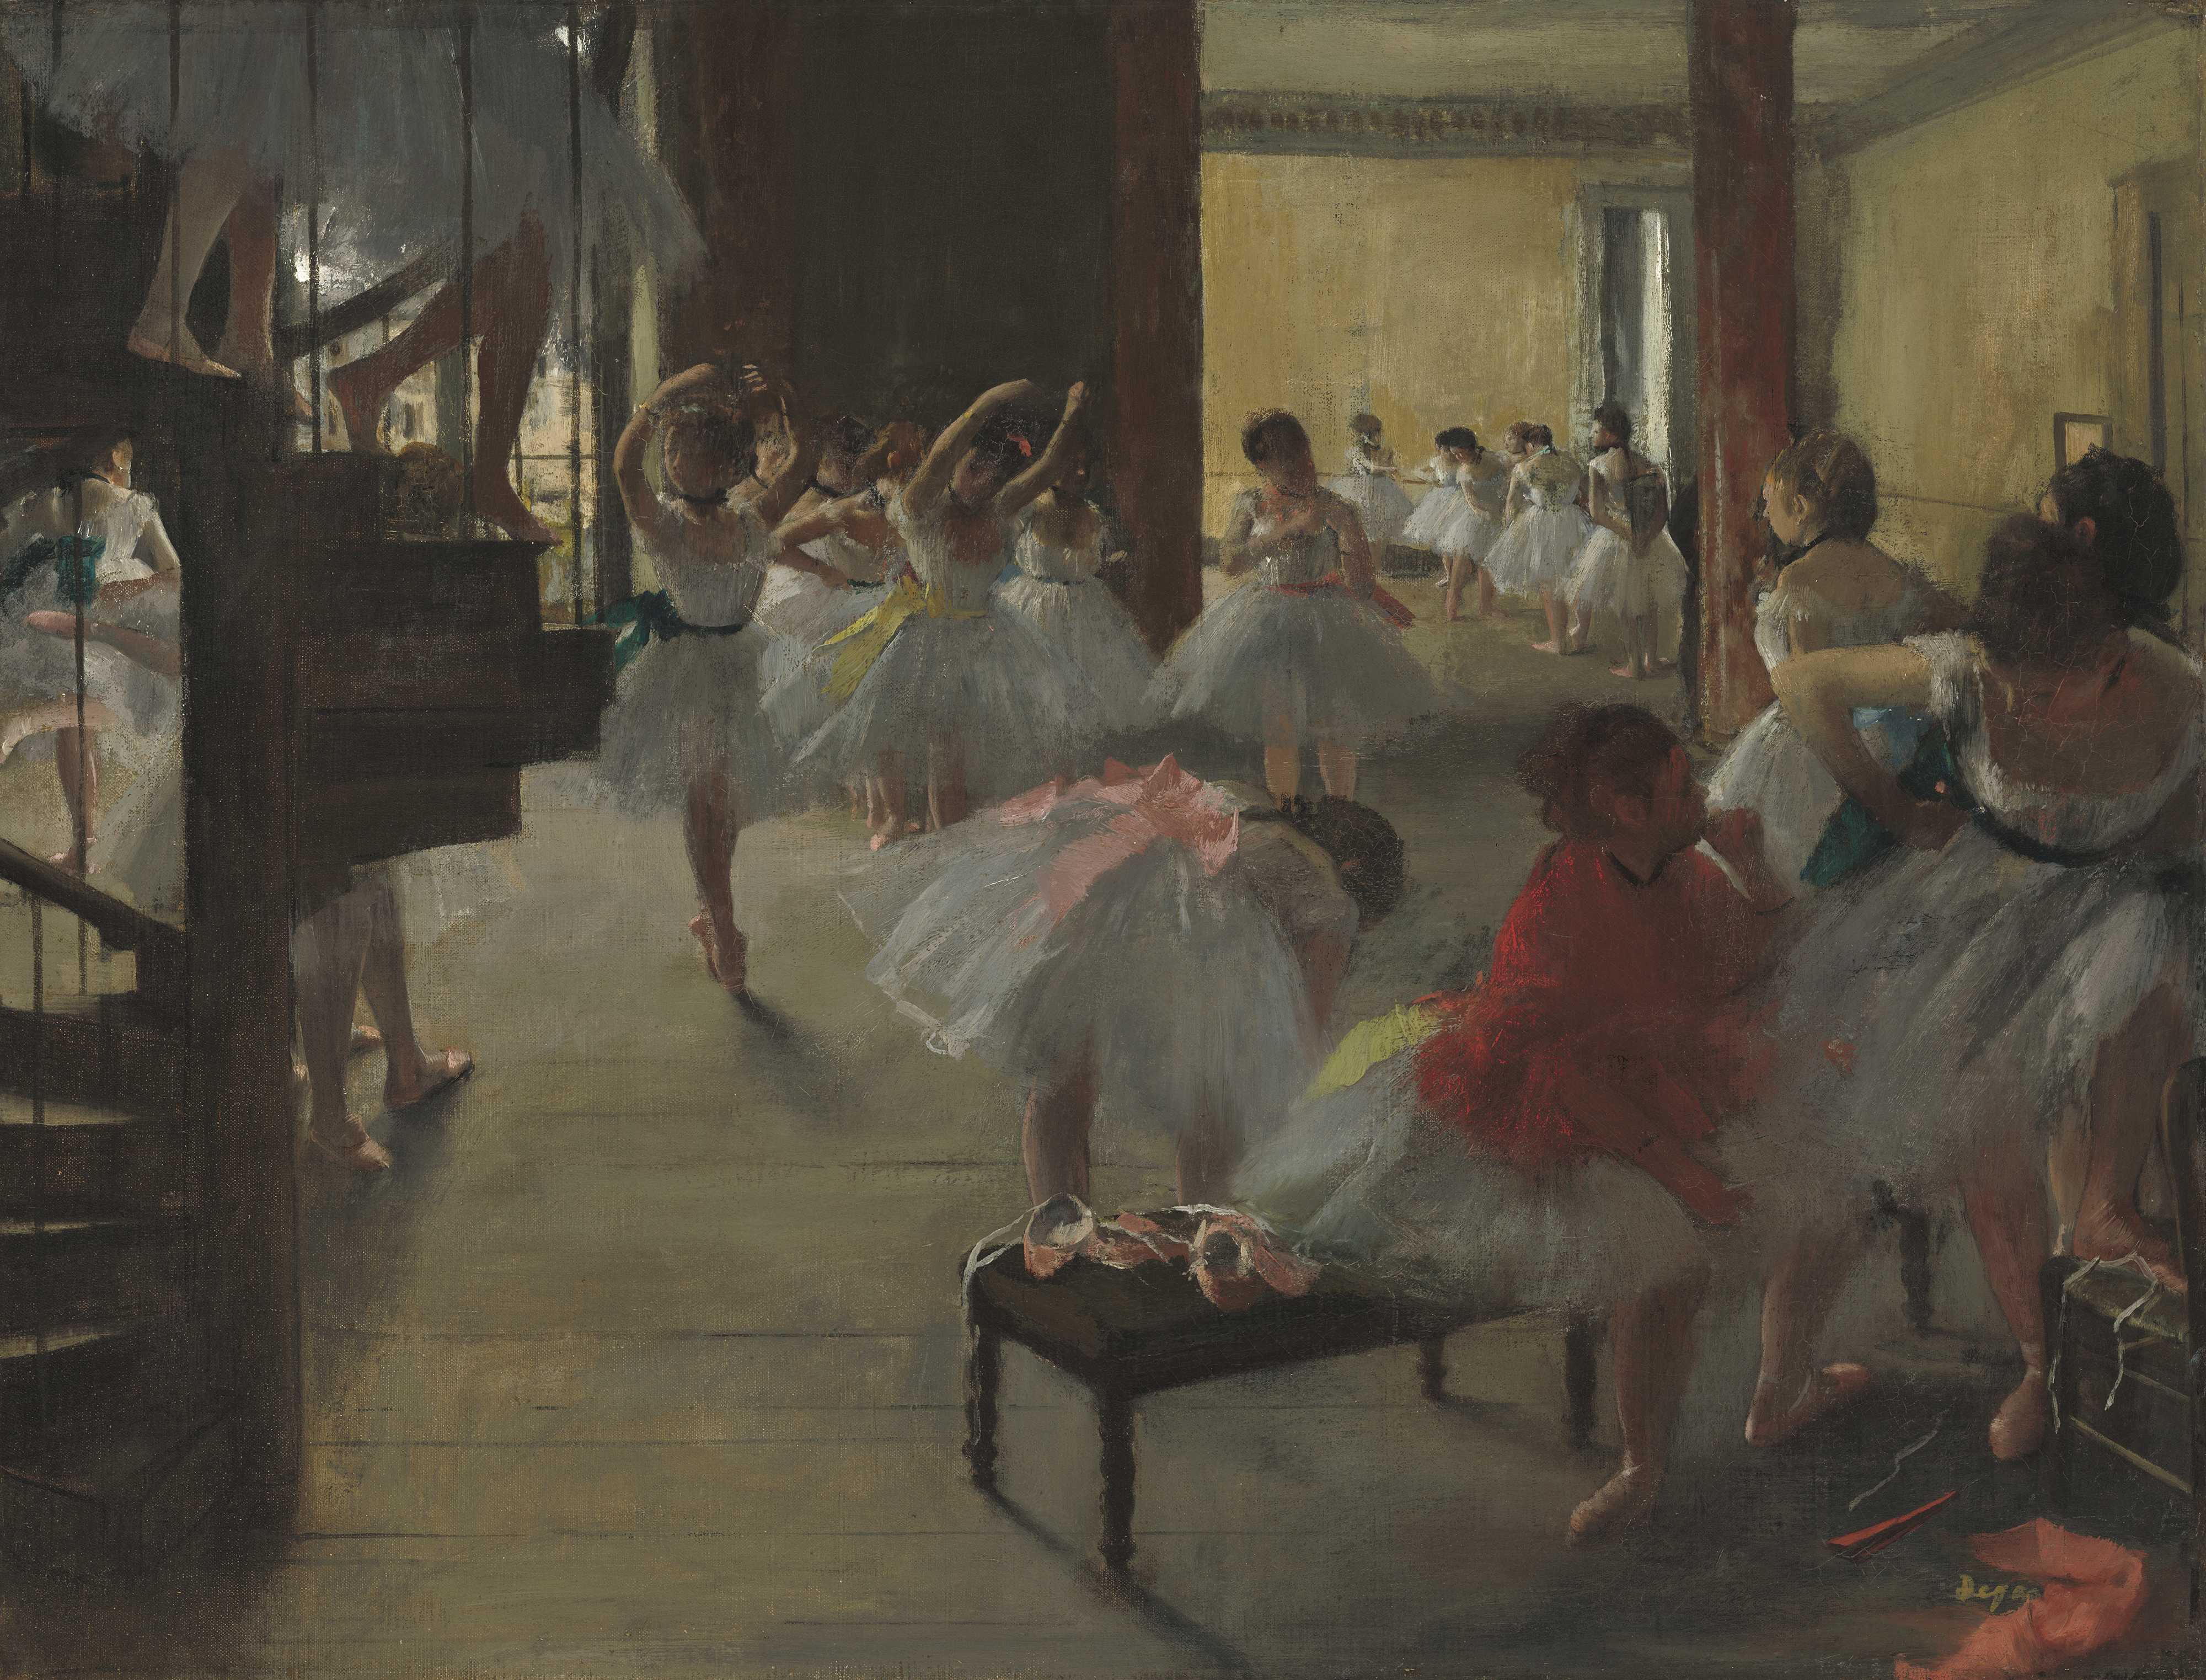 La Classe de danse,1873-76. Huile sur toile, Washington,DC,The National Gallery of Art. Photo ©Washington,DC,The National Gallery of Art –NGA IMAGES